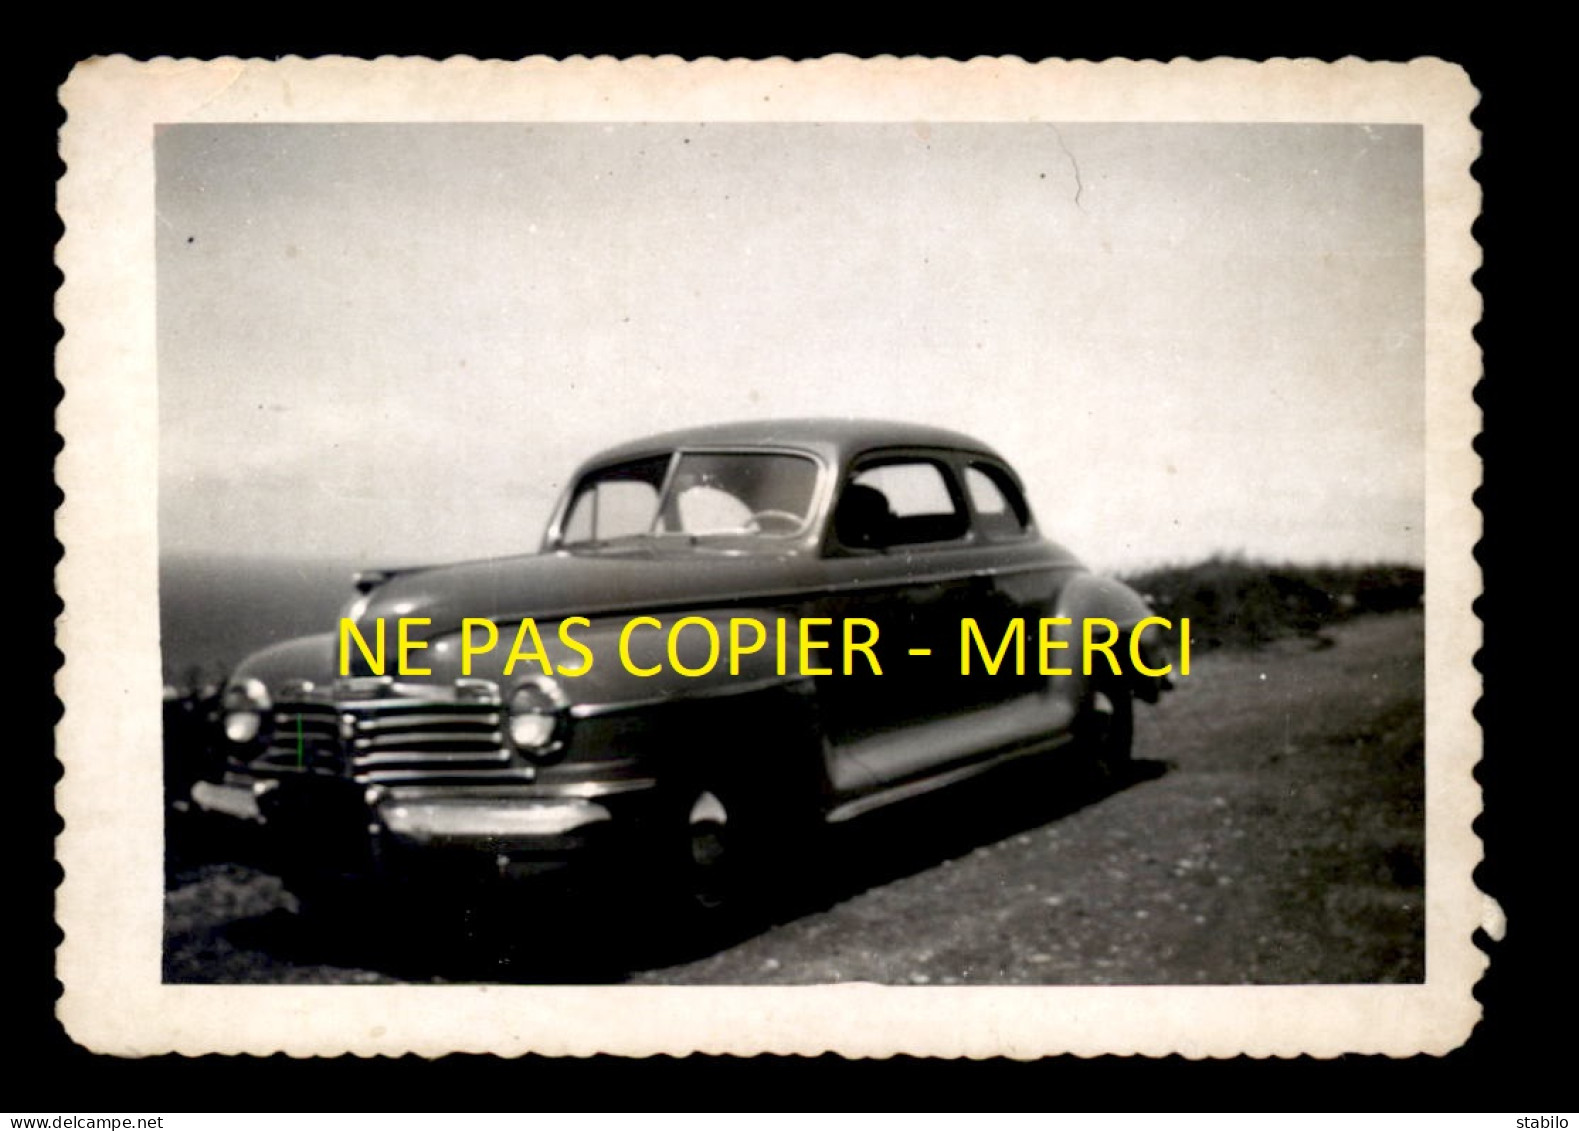 AUTOMOBILE AMERICAINE - PLYMOUTH COUPE 1942 - BORDS DU PACIFIQUE MAI 1951 - 2 PHOTOS FORMATS 13 X 9 CM - Cars